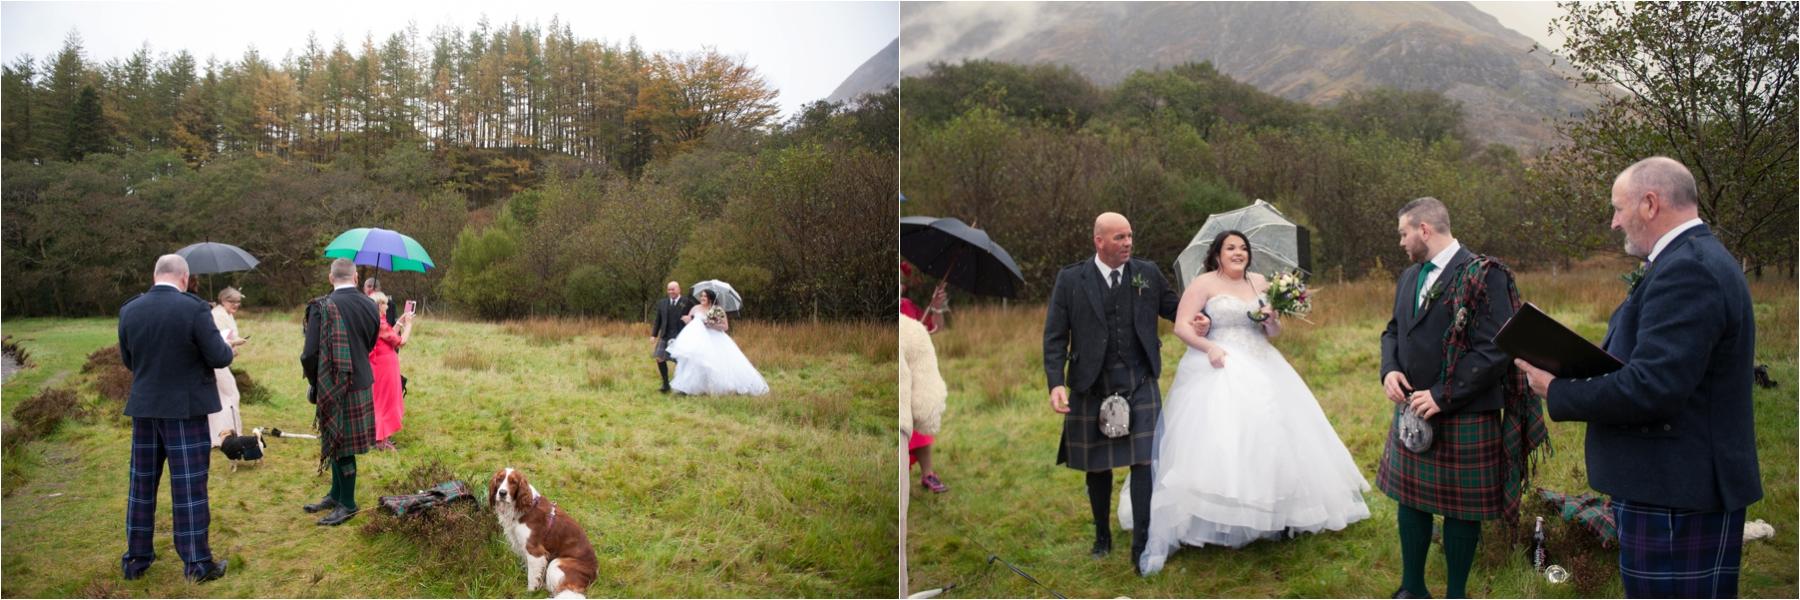 photography at scottish Highland wedding in glencoe